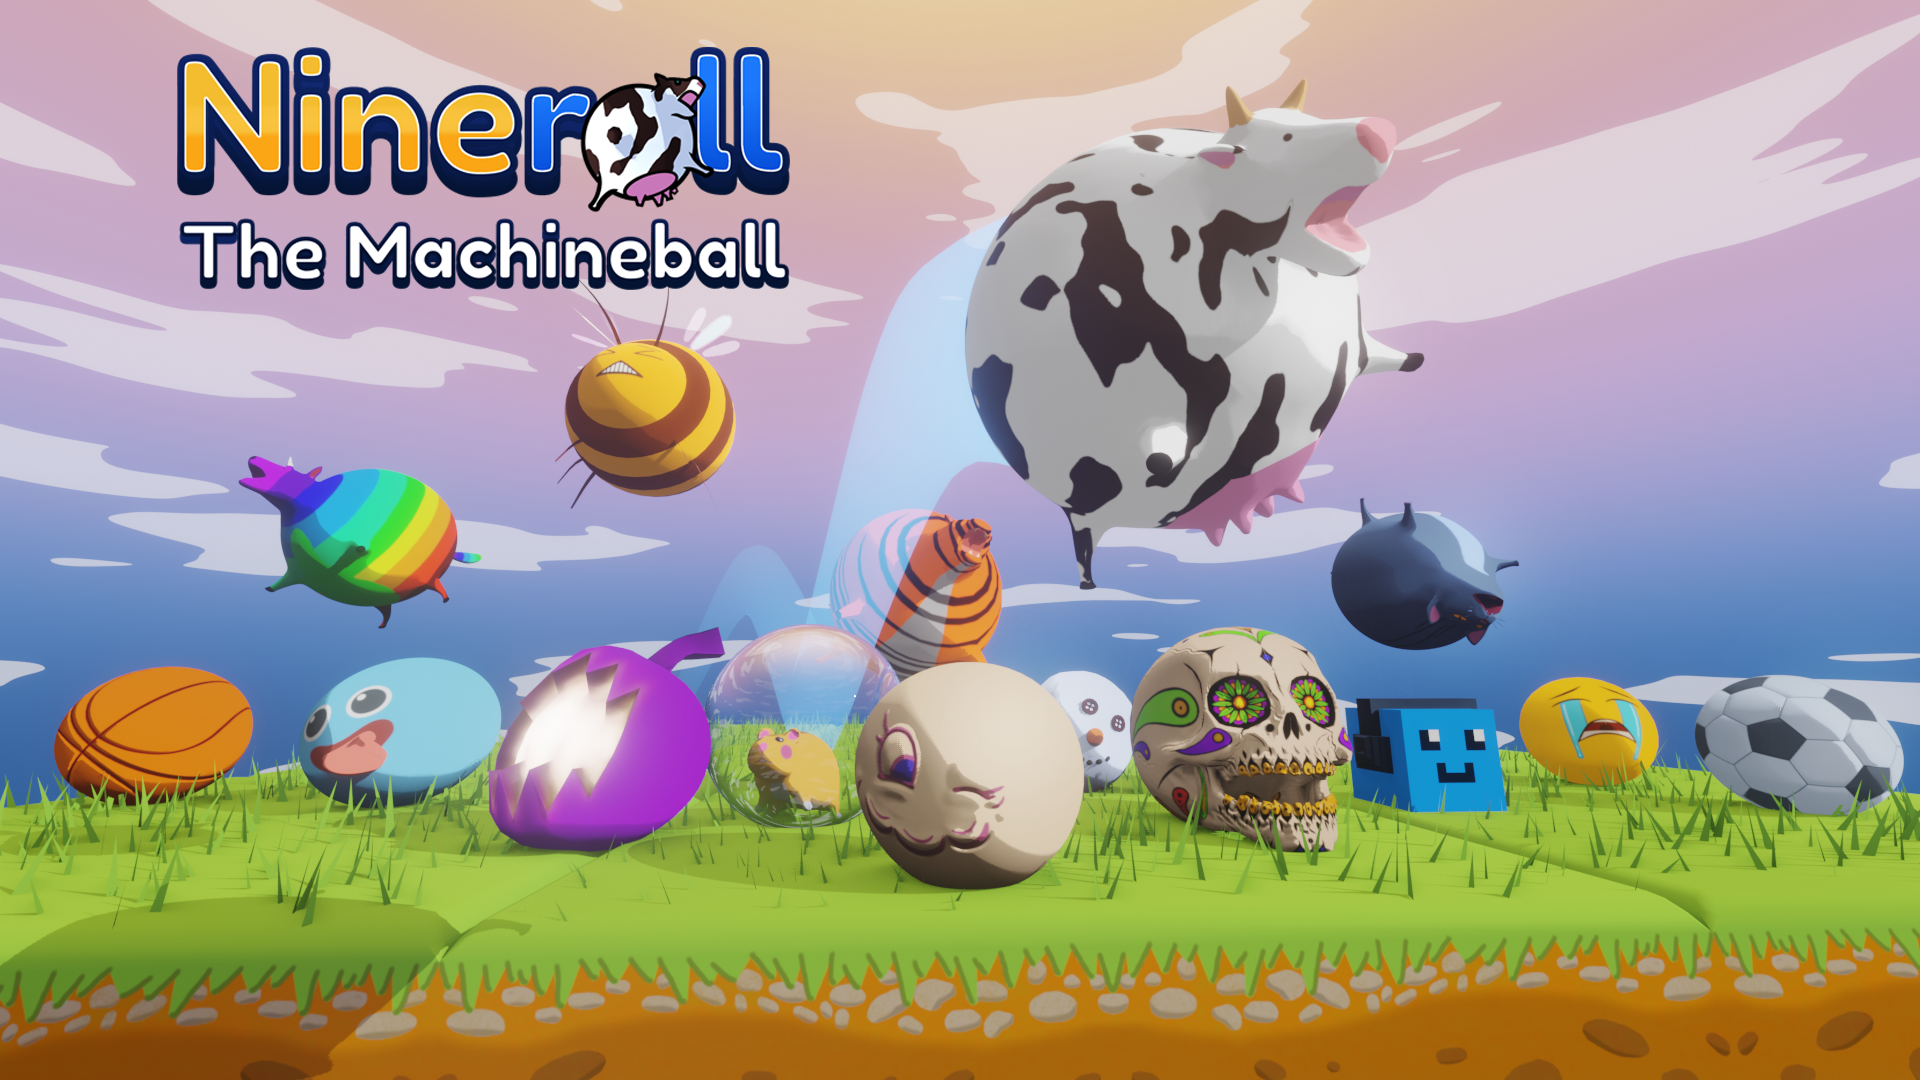 Nineroll: The Machineball